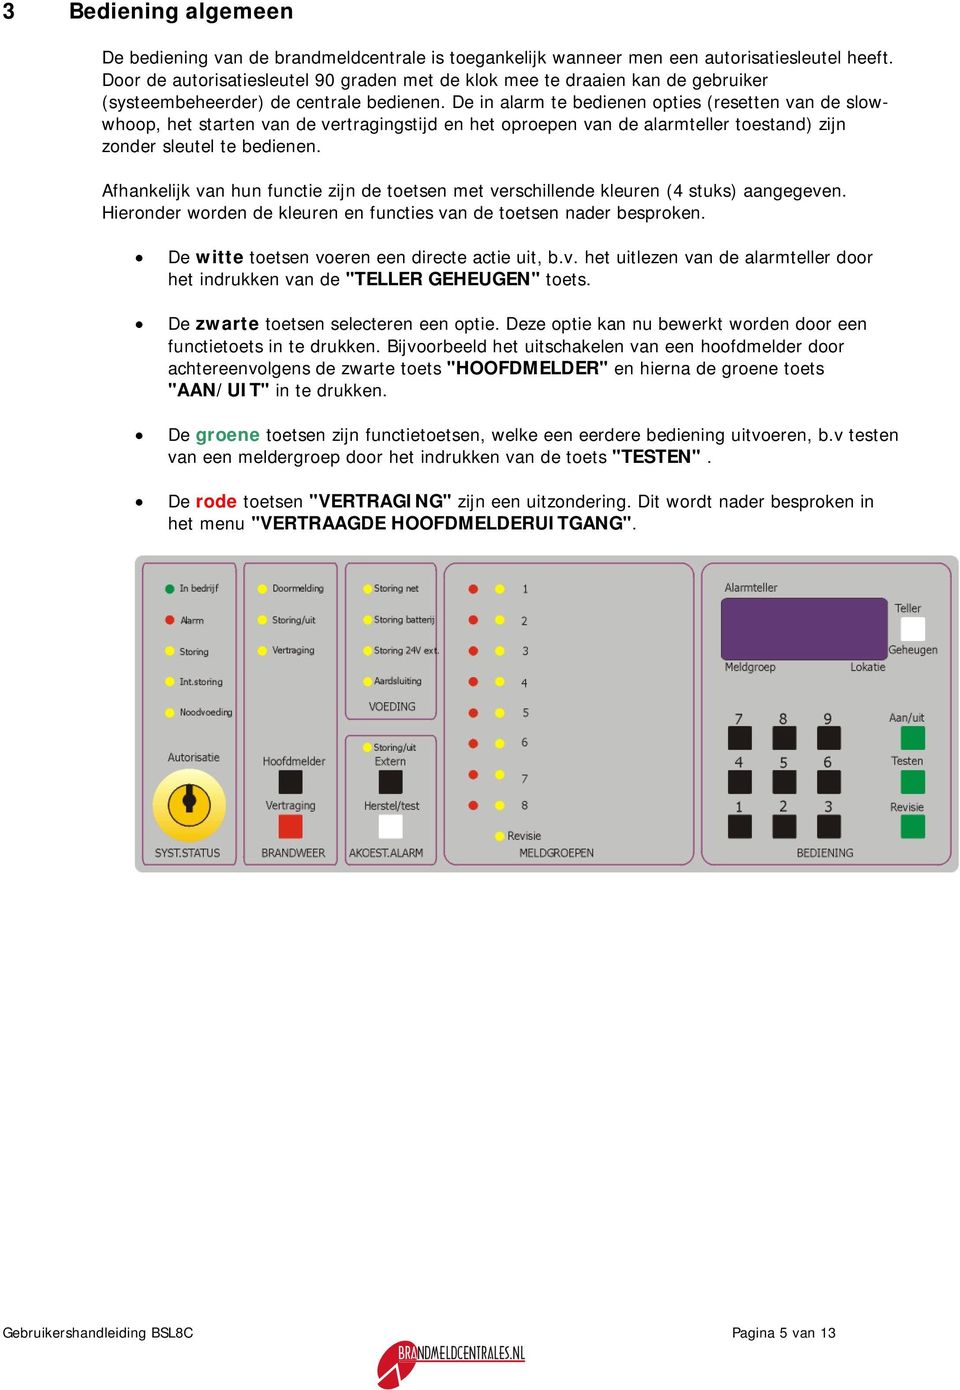 De in alarm te bedienen opties (resetten van de slowwhoop, het starten van de vertragingstijd en het oproepen van de alarmteller toestand) zijn zonder sleutel te bedienen.